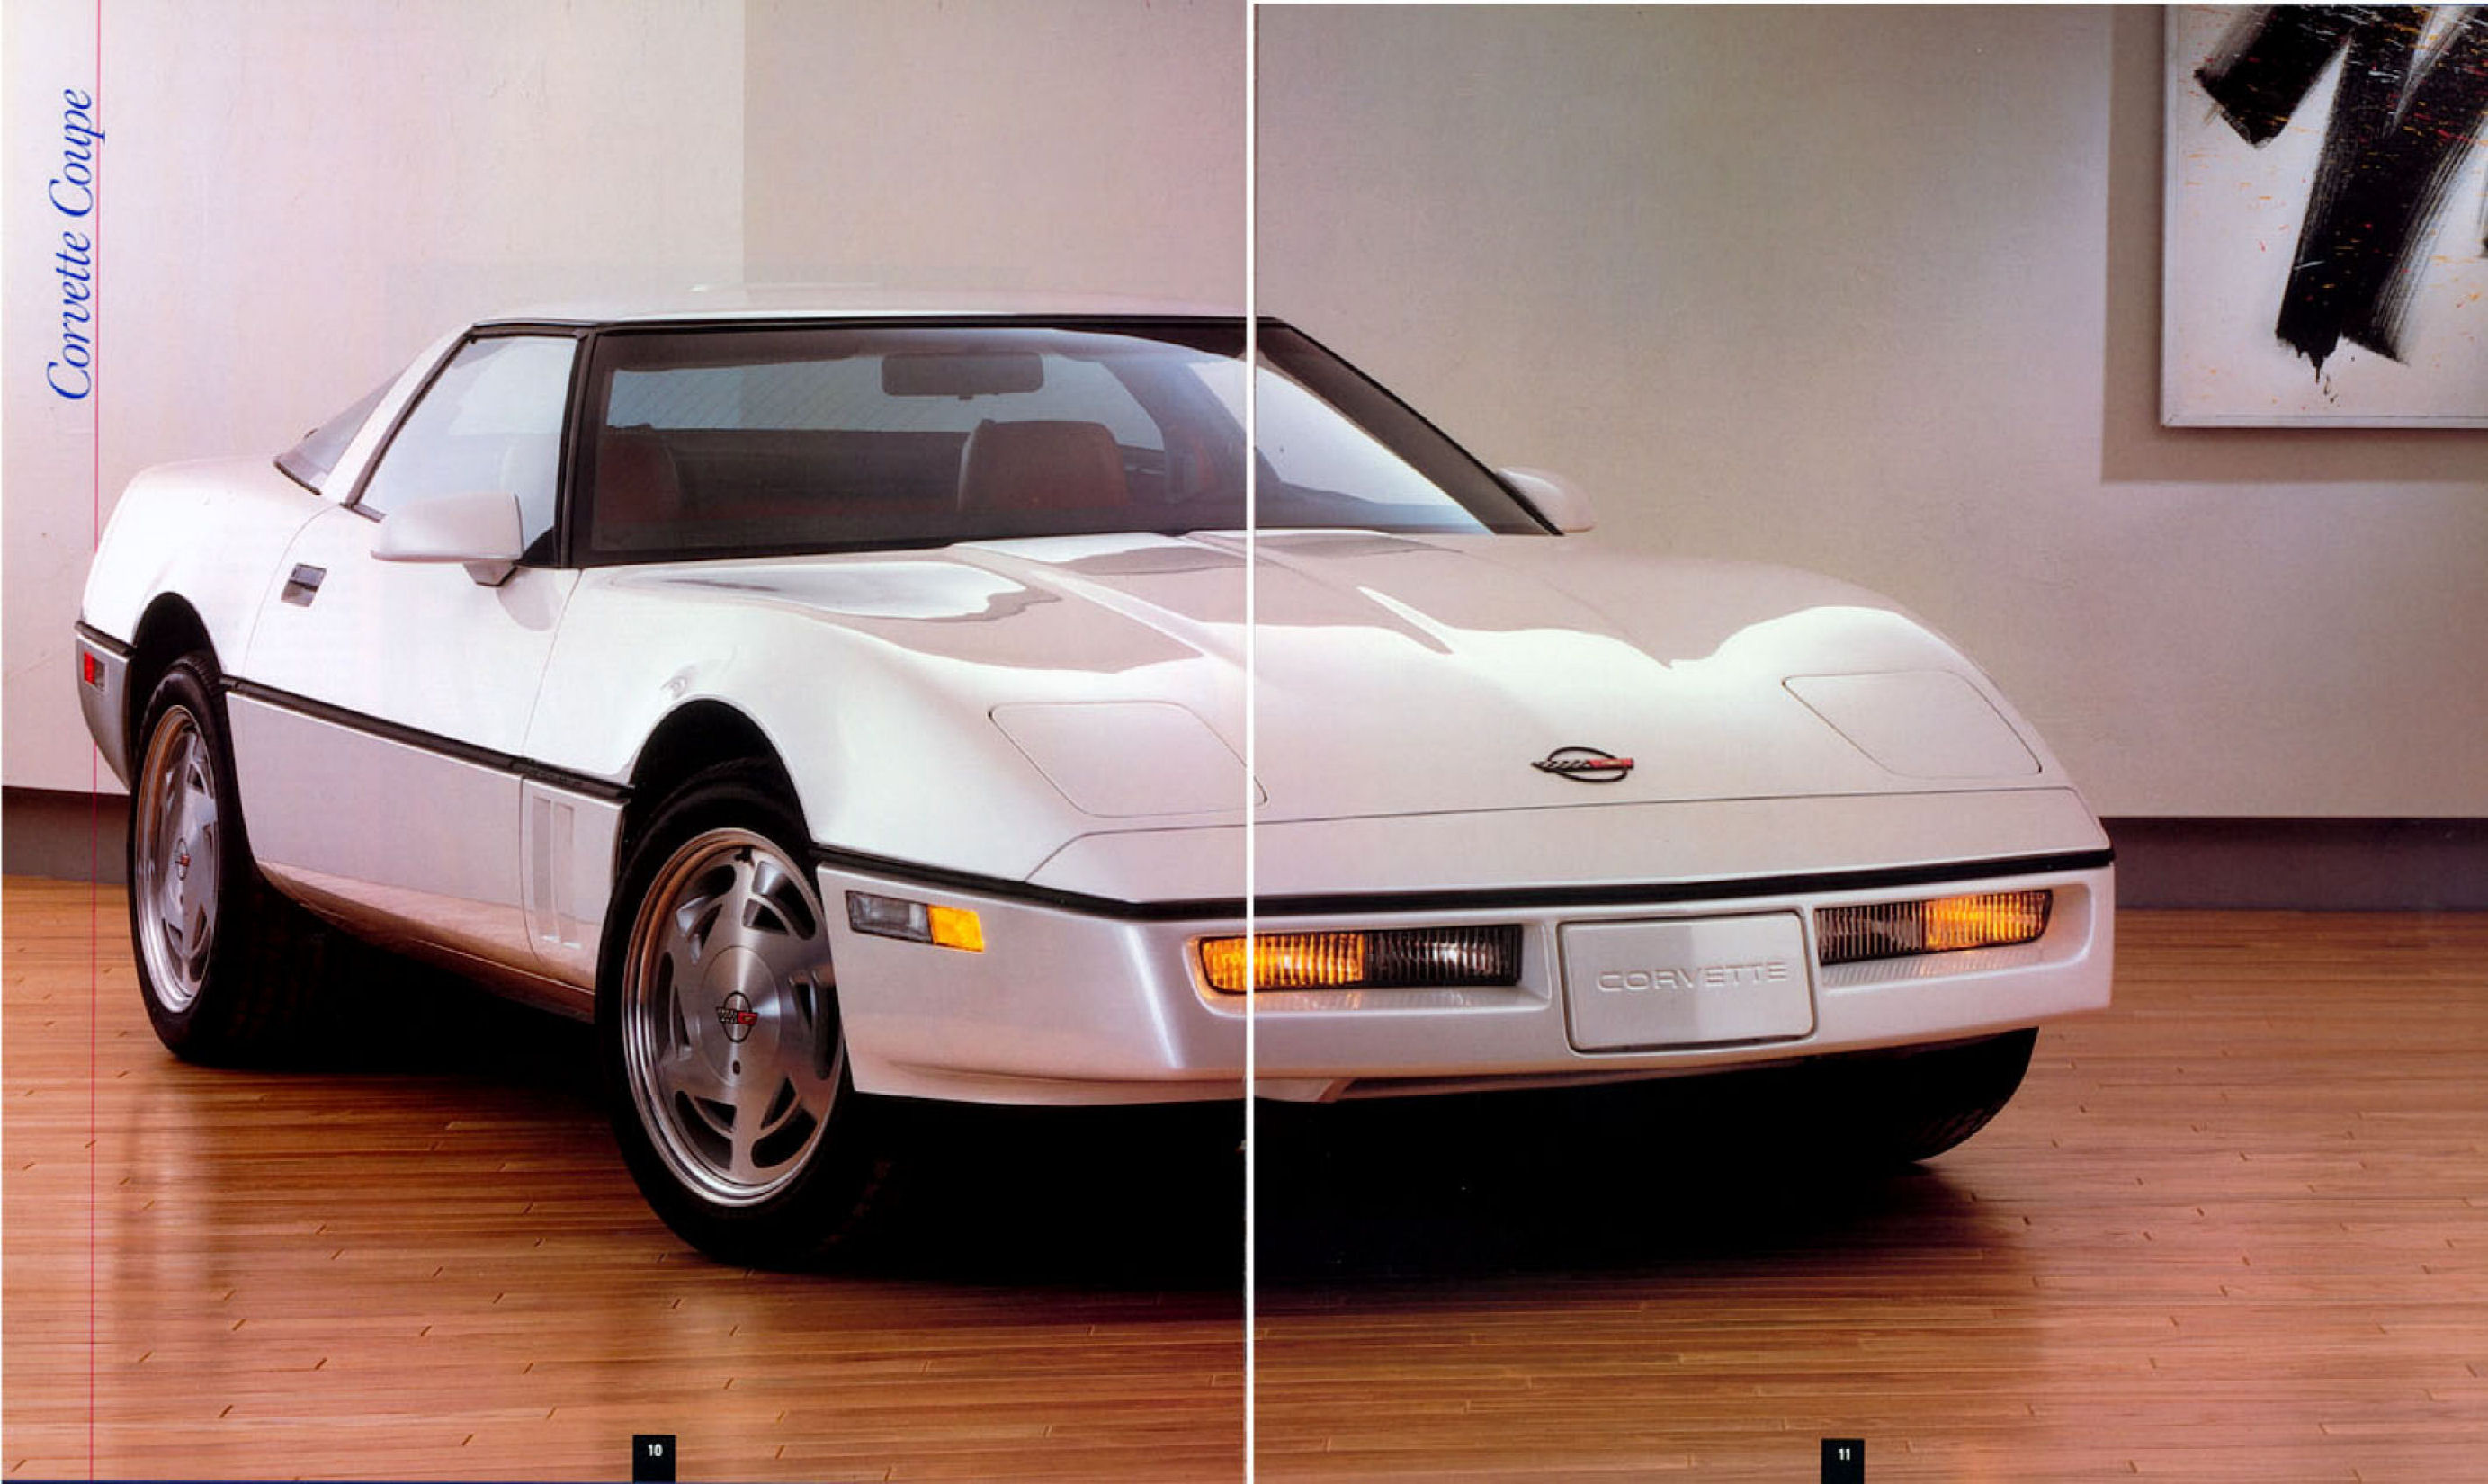 1989_Chevrolet_Corvette-10-11